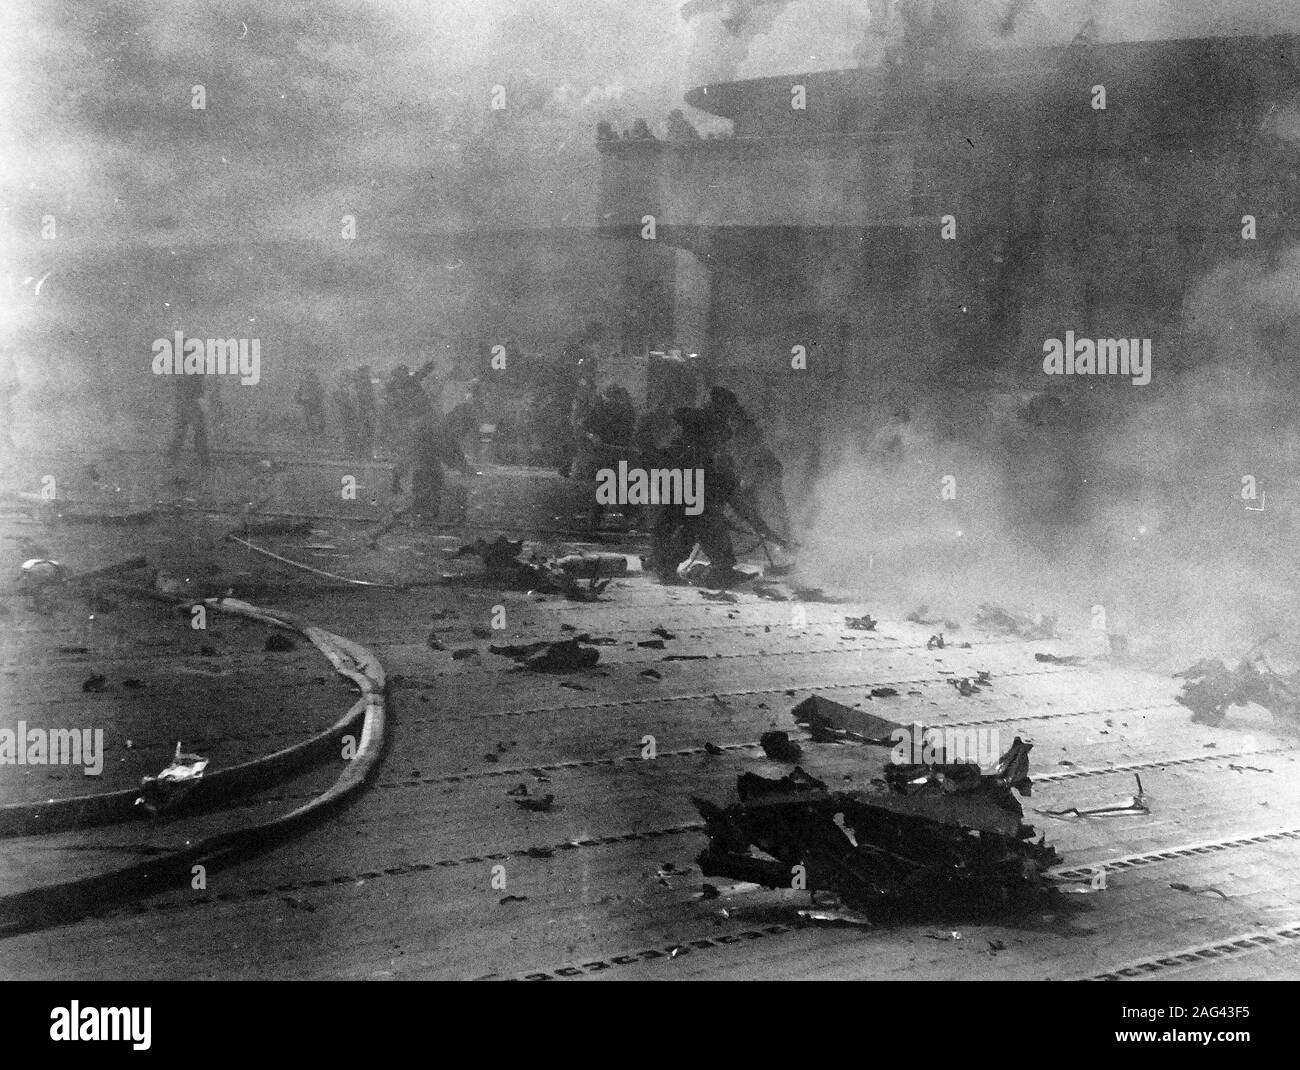 Schlacht von Santa Cruz Inseln, 26. Oktober 1942. Feuerwehr Mannschaften versuchen, die Flammen zu löschen, an Bord der USS Hornet (CV-8), nachdem es von einem Absturz japanische Sturzkampfbomber angeschlagen wurde, am Morgen des 26. Oktober 1942. Hornet später am Tag gesunken. Stockfoto